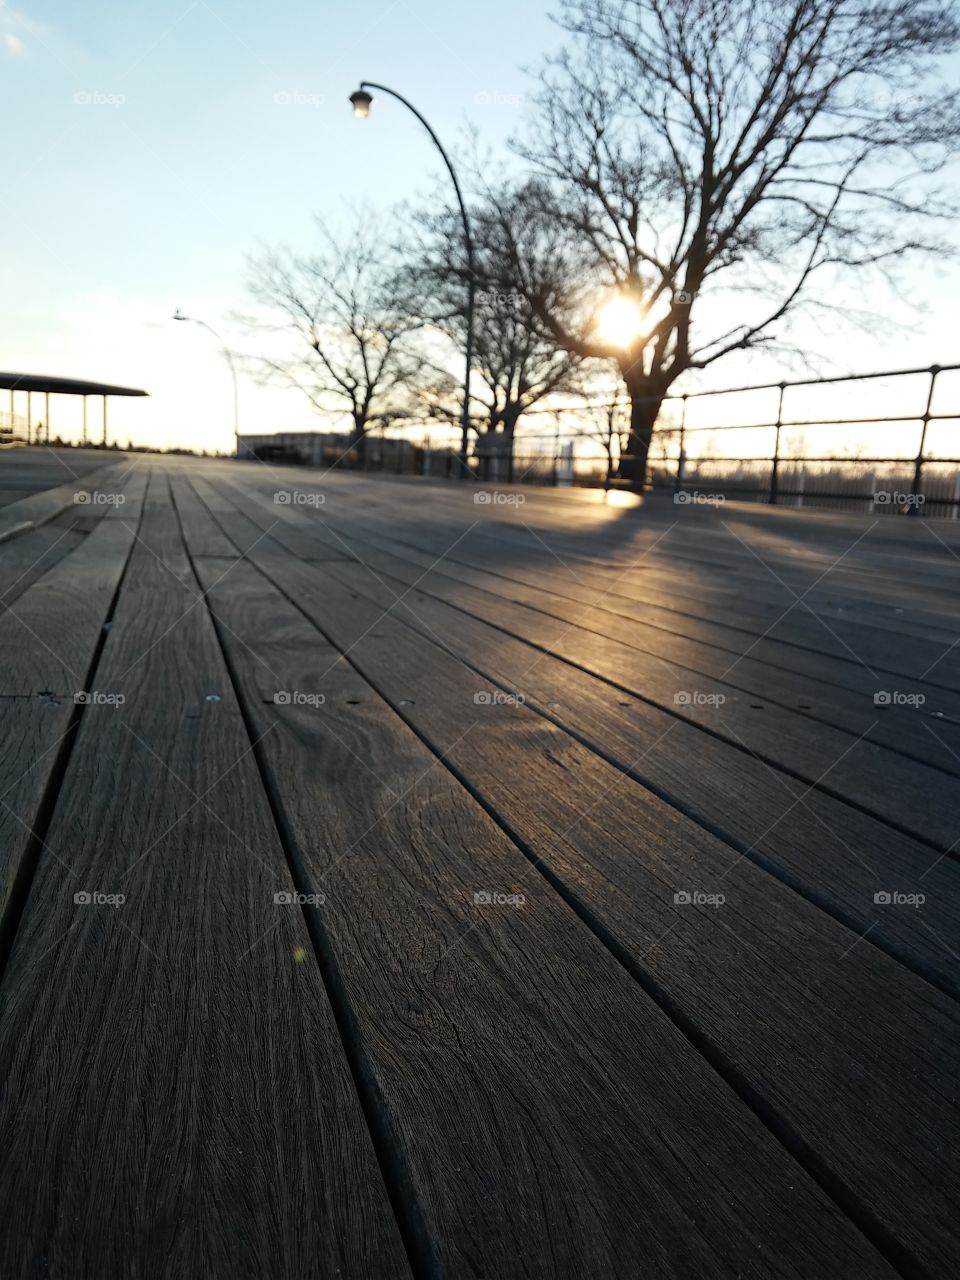 Winter sun descending behind barren trees along the boardwalk of Ocean Beach, Connecticut [original photo].